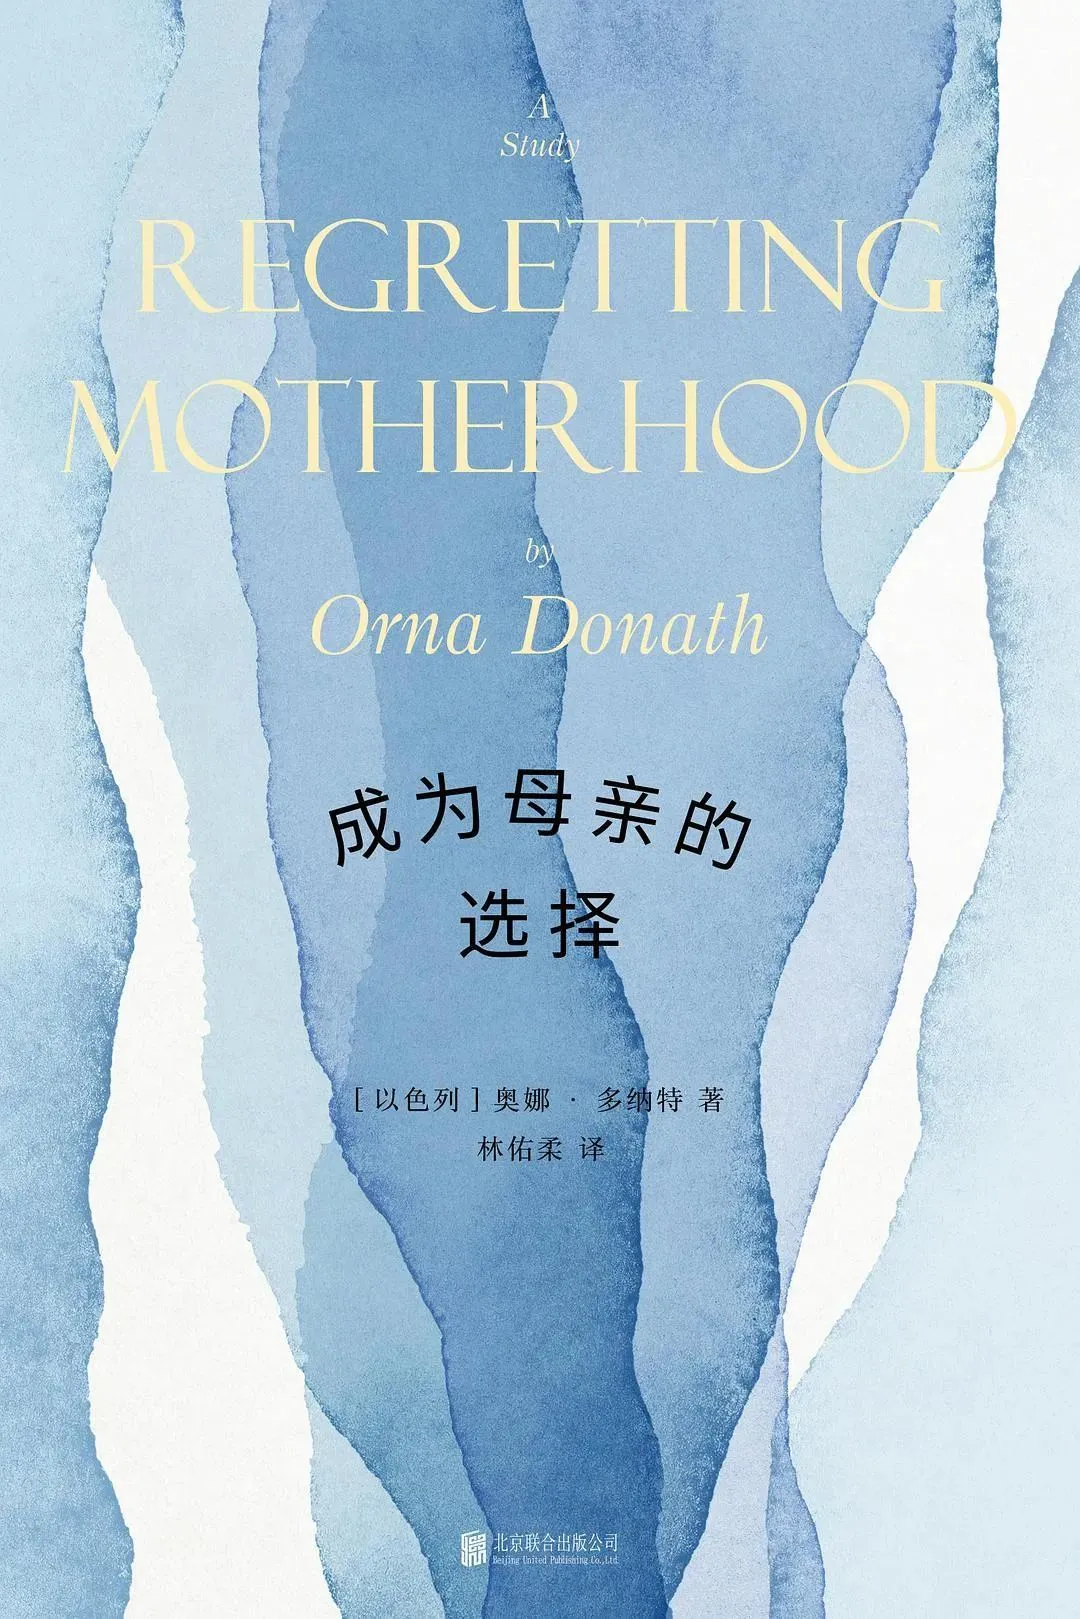 《成为母亲的选择》，[以]奥娜·多纳特著。林佑柔译，明室Lucida | 北京联合出版公司，2022年2月